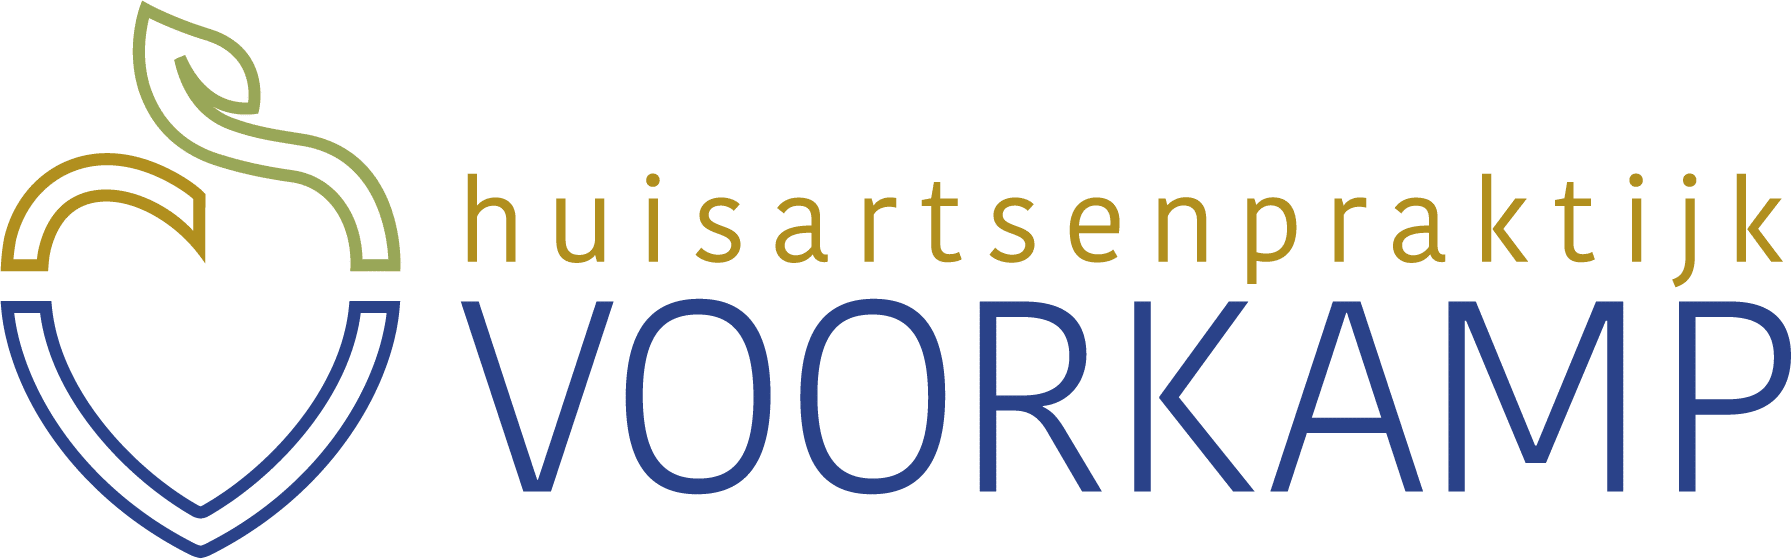 Huisartsenpraktijk Voorkamp Benoordenhout